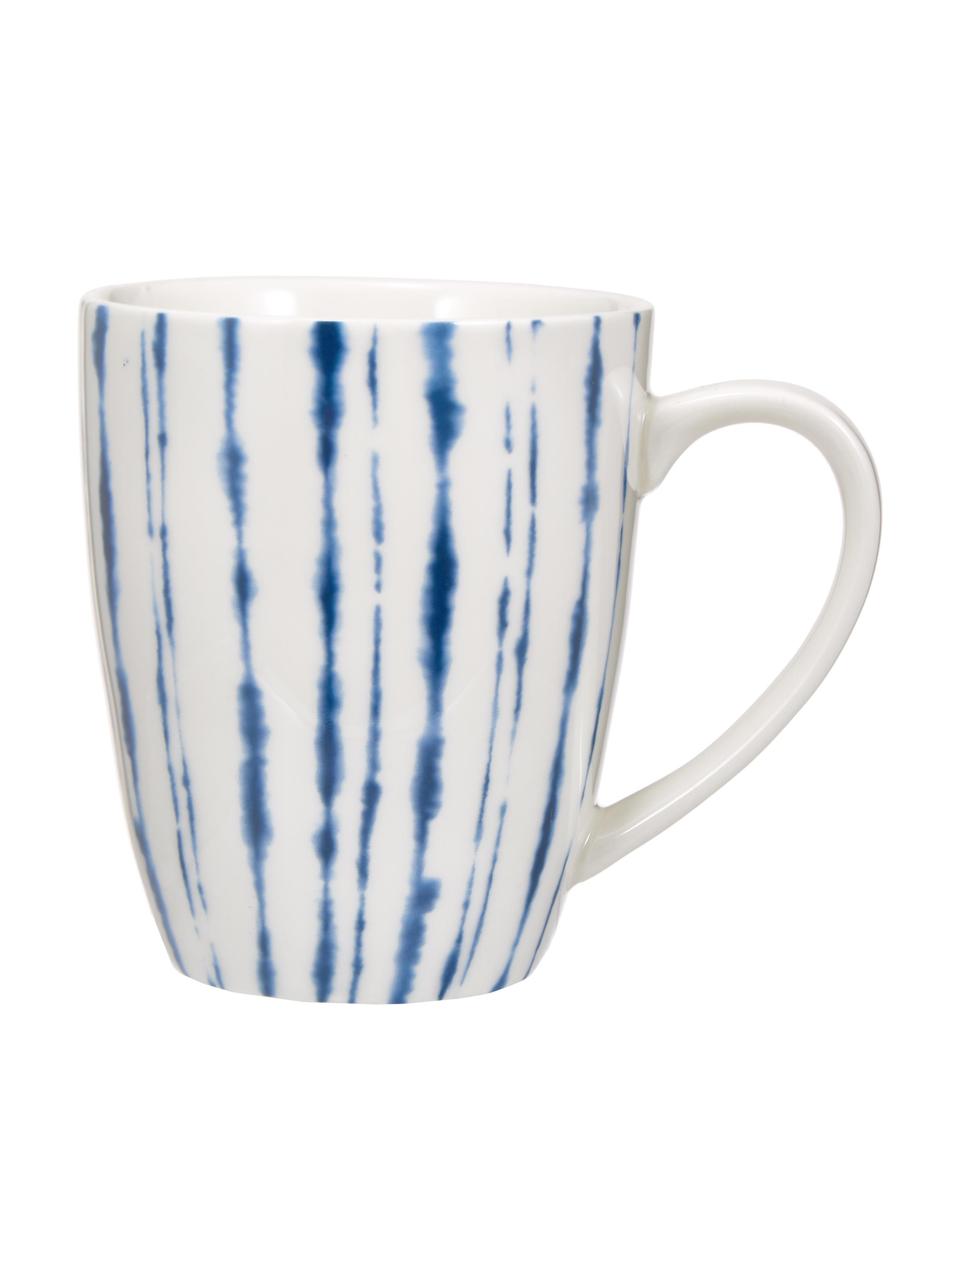 Kubek do kawy z porcelany Amaya, 2 szt., Porcelana, Biały, niebieski, Ø 8 x W 10 cm, 350 ml